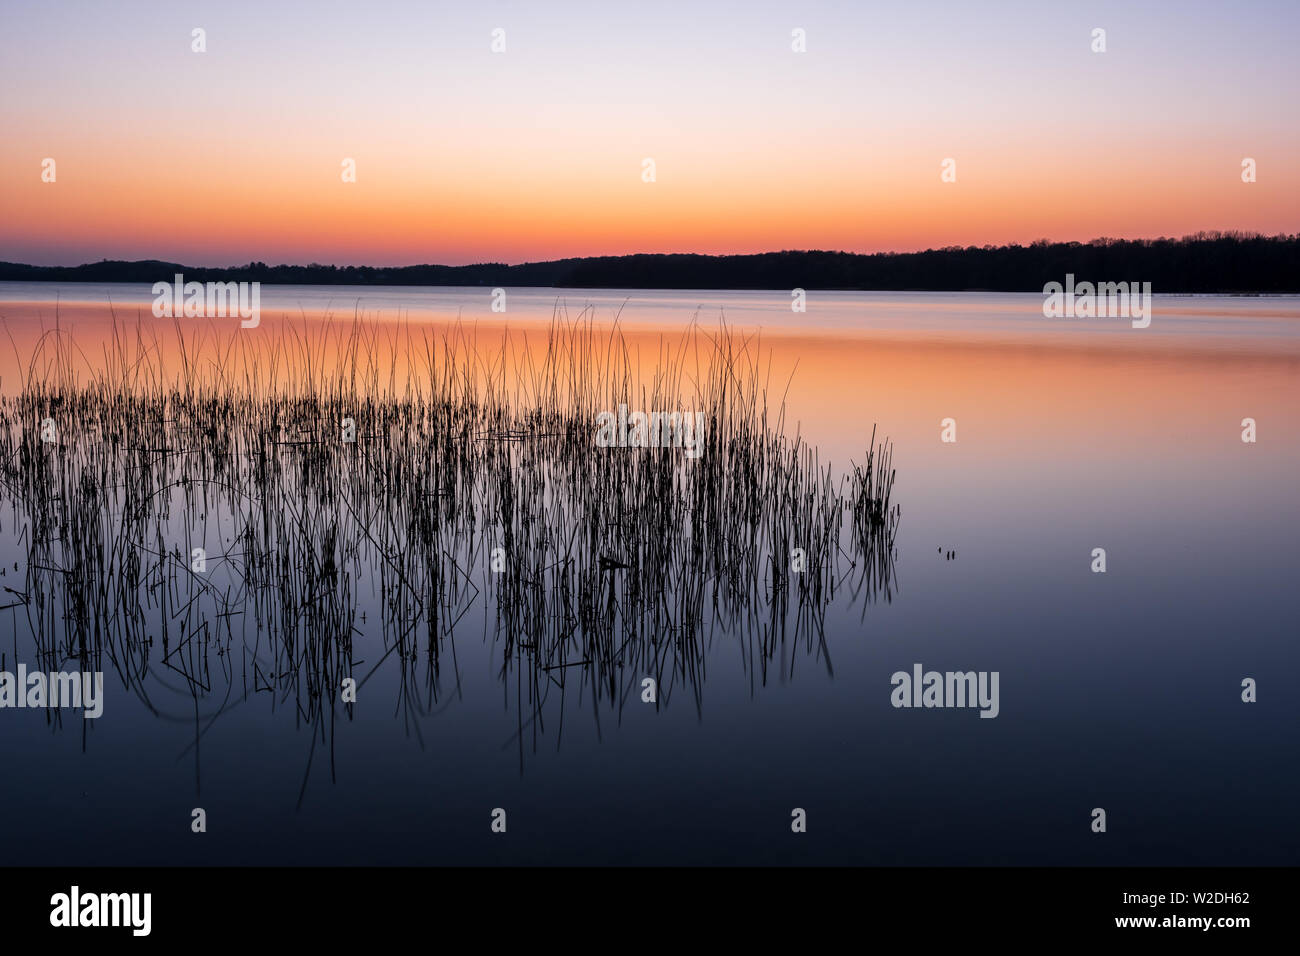 Paisible et coloré coucher du soleil sur le lac Kellersee à roseaux en premier plan, Schleswig-Holstein Allemagne du Nord Banque D'Images